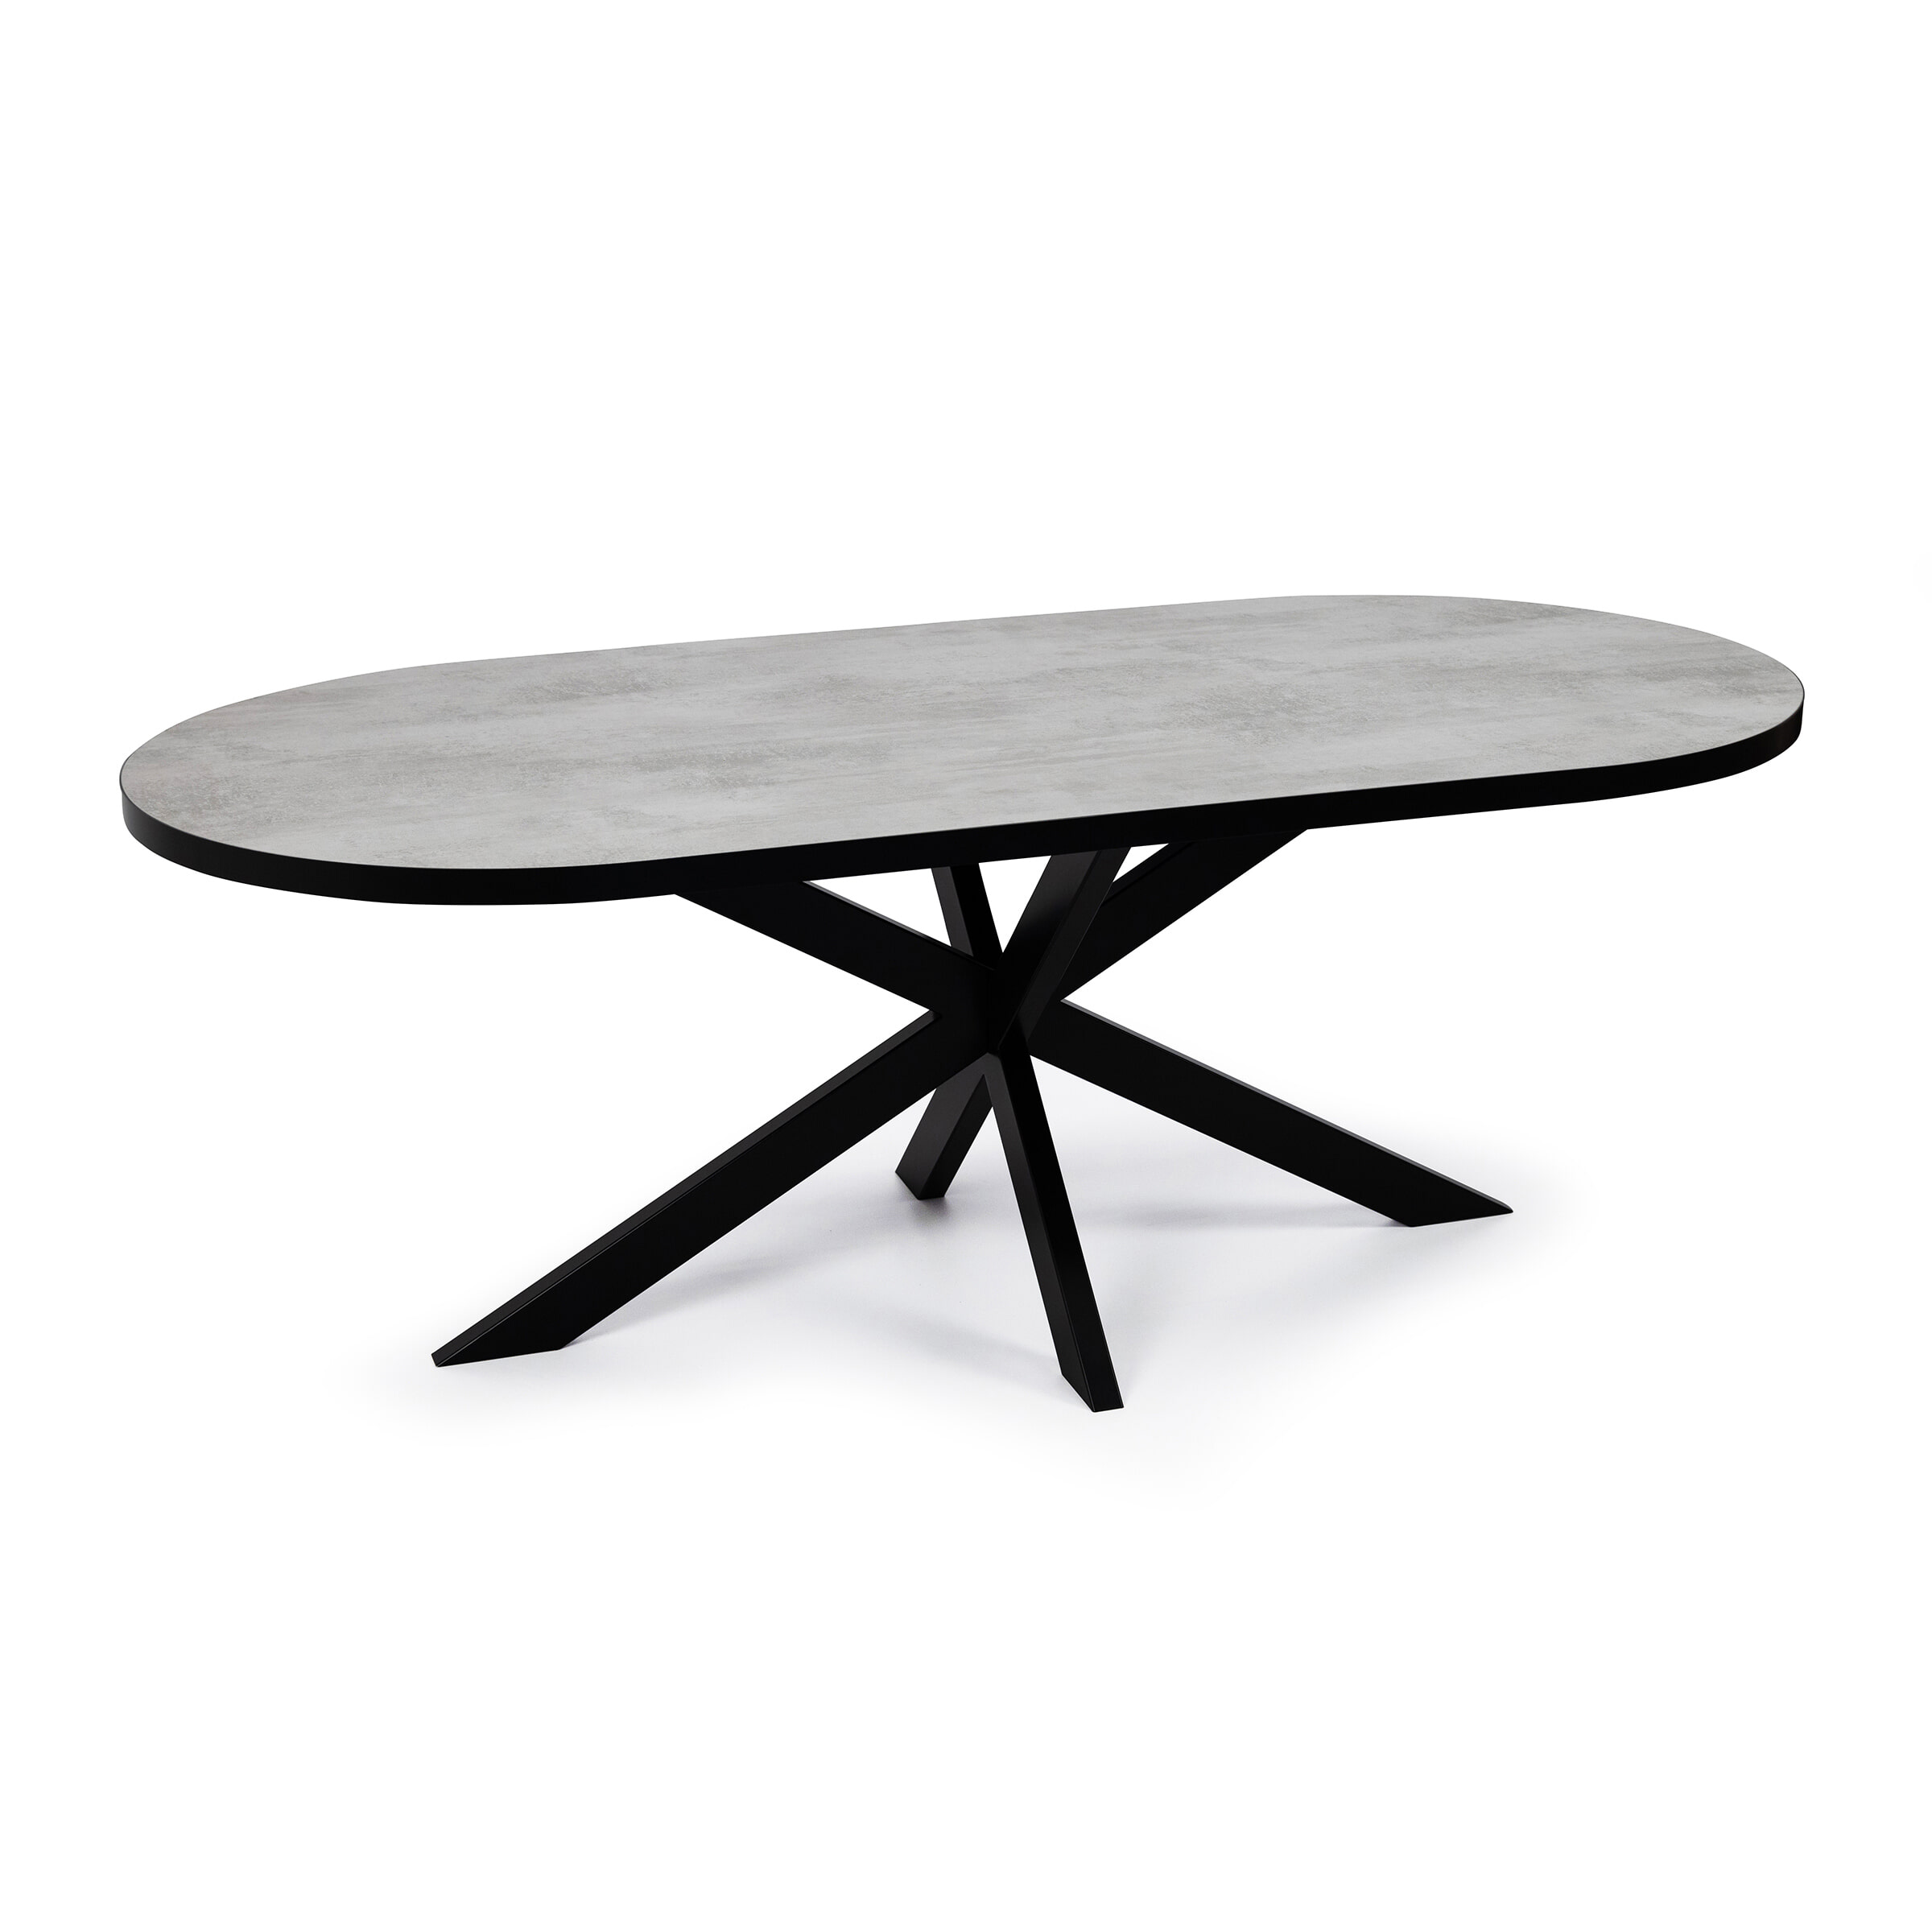 Stalux Plat Ovale eettafel 'Emma' 180 x 100cm, kleur zwart / beton